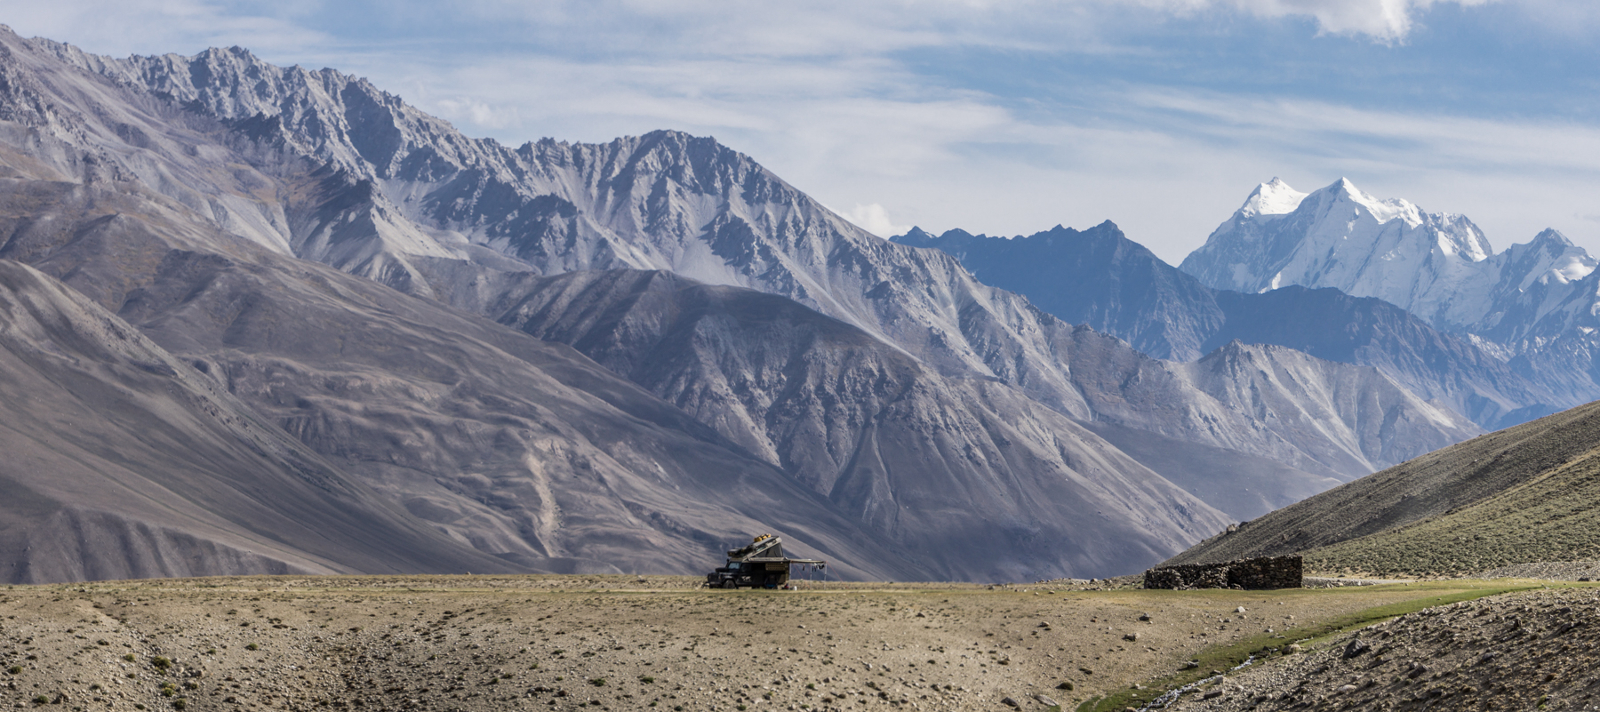 Bodensee-Overlander - Camping im Wakhan Valley in Tadschikistan. Die Berge im Hintergrund gehören bereits zu Afghanistan.